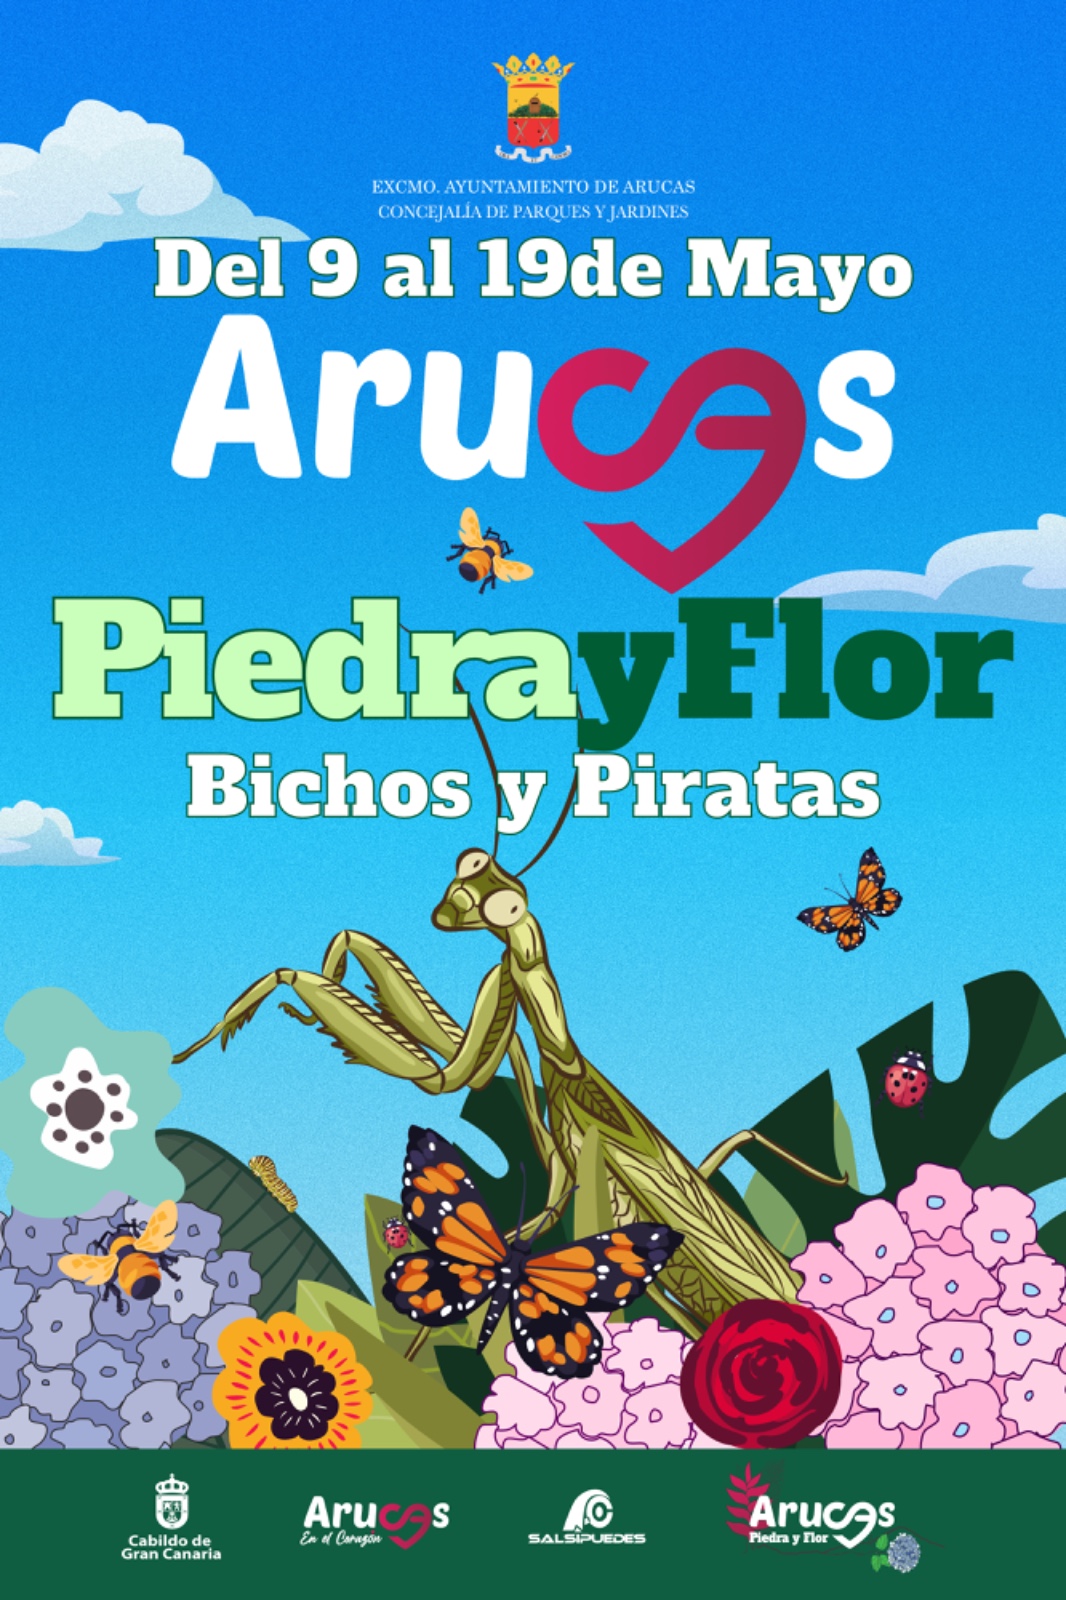 ARUCAS PIEDRA Y FLOR - BICHOS Y PIRATAS